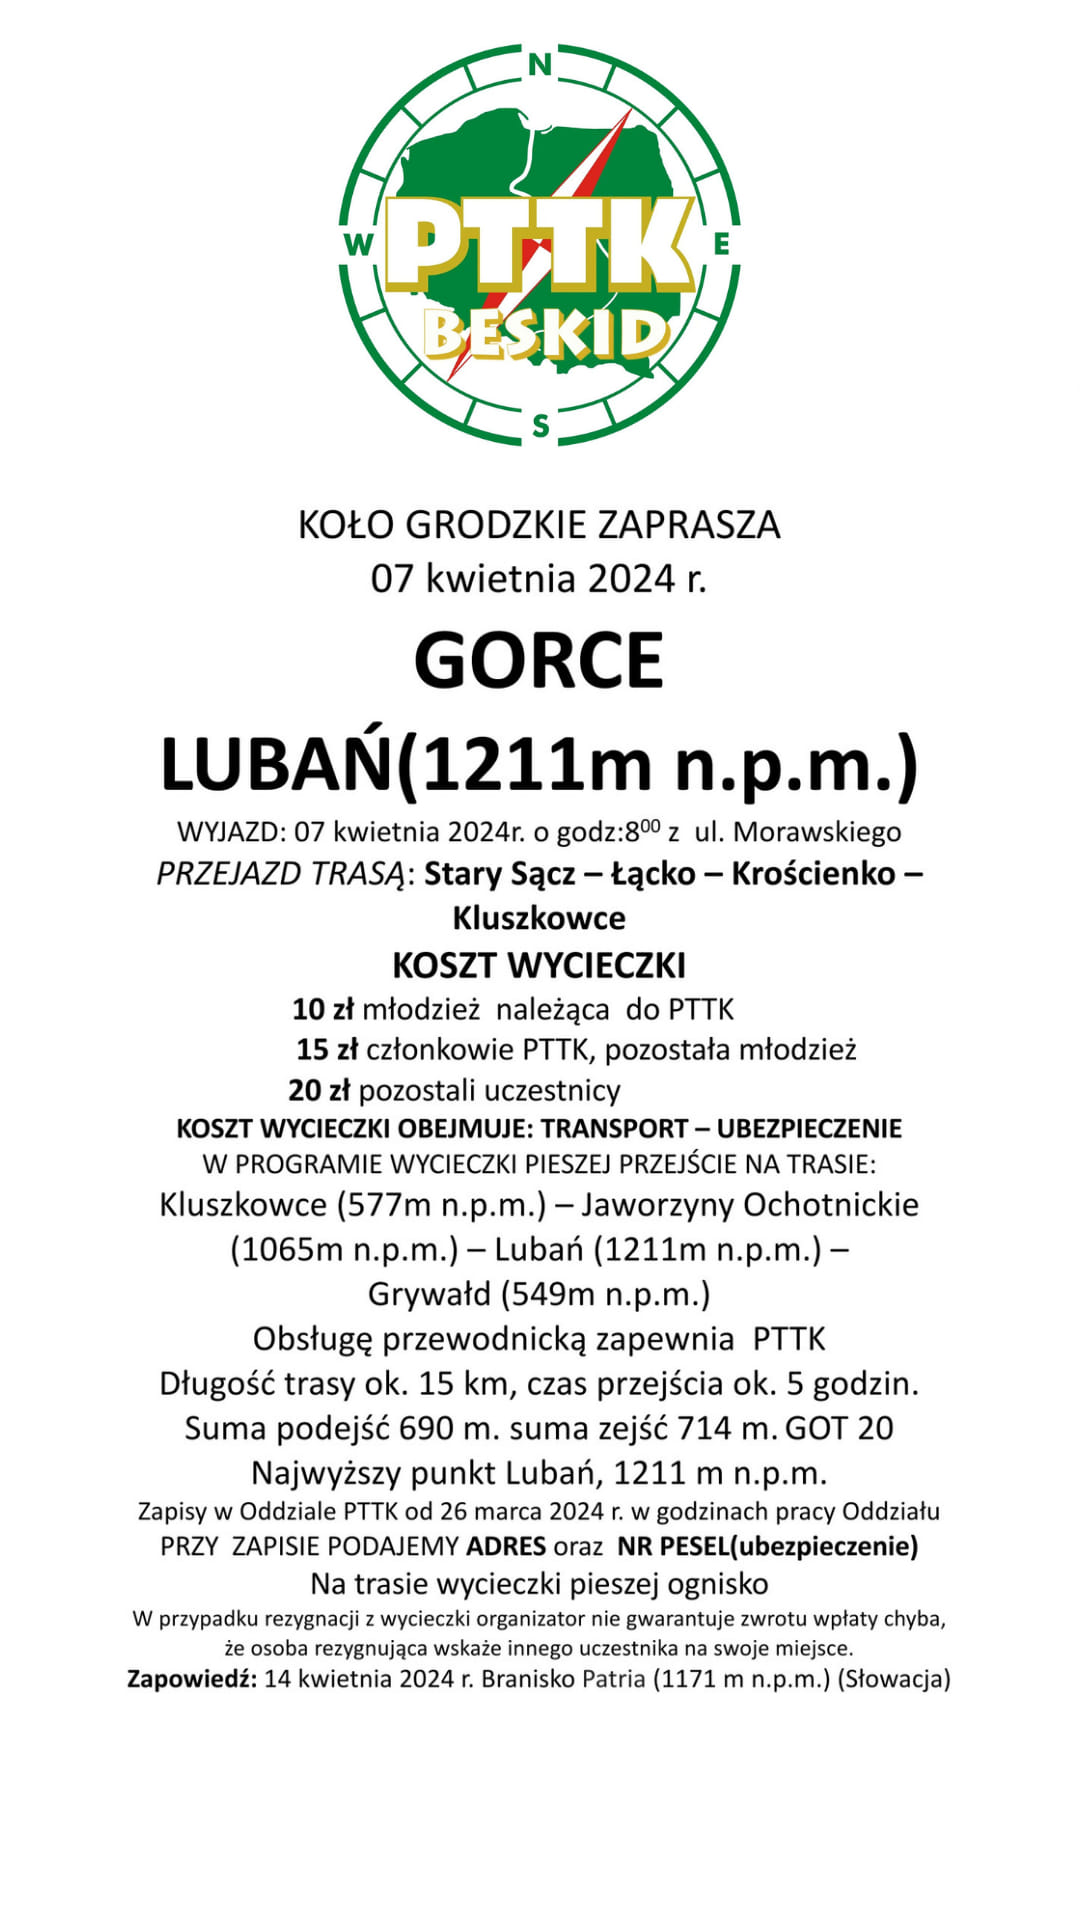 Wycieczka Gorce (Lubań), 7 kwietnia 2024 r.